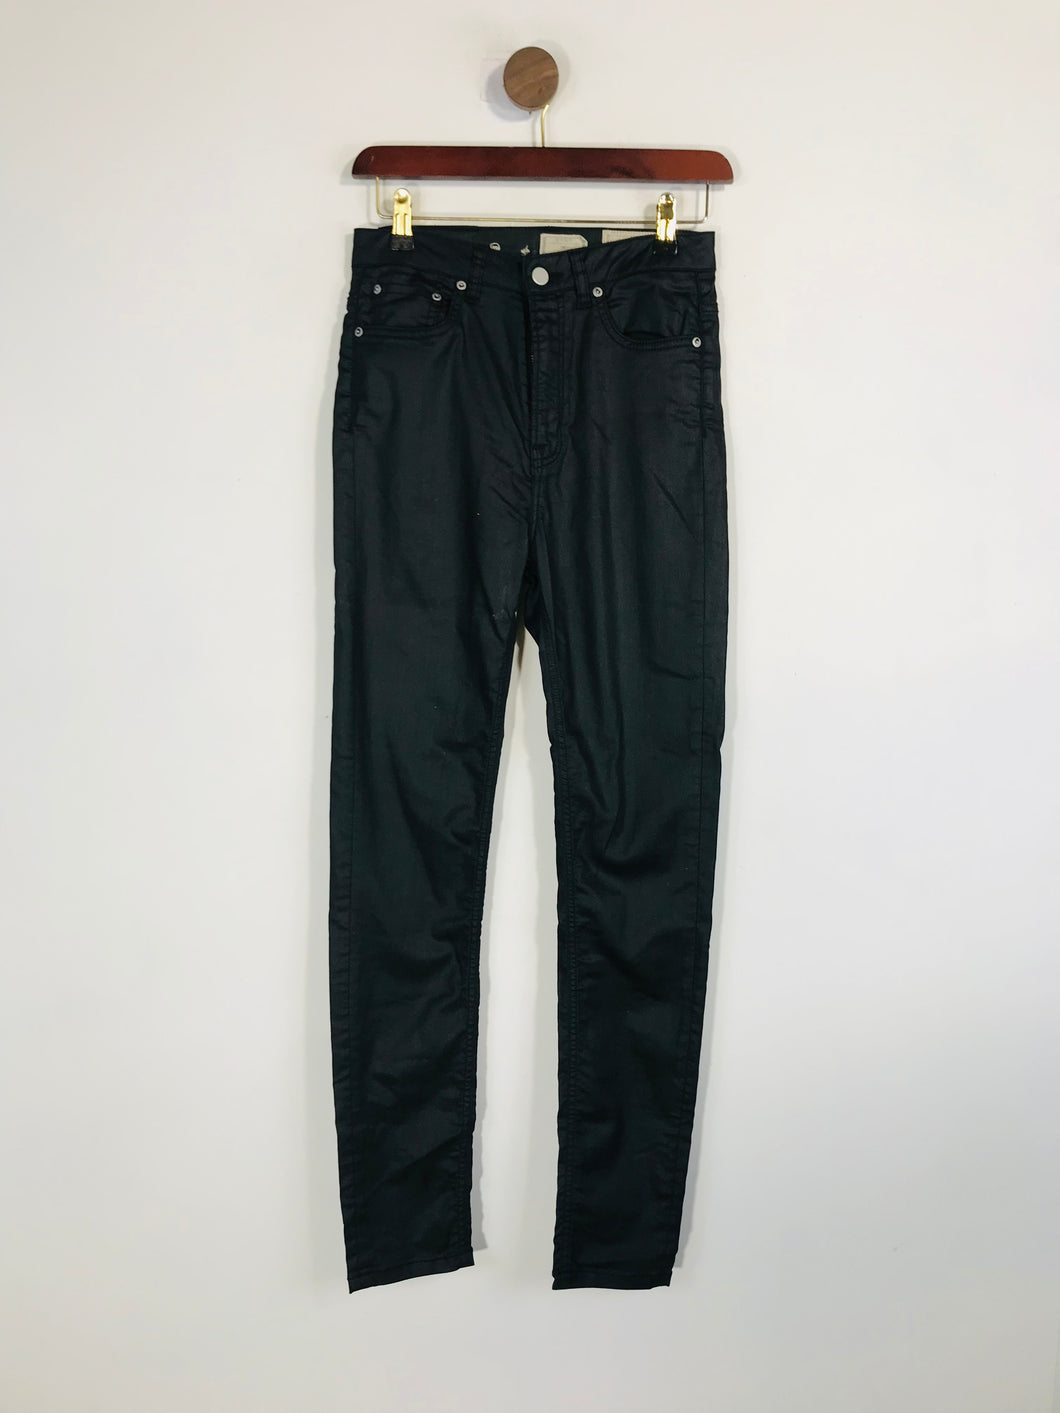 Allsaints Women's Skinny Jeans | W28 UK10 | Black